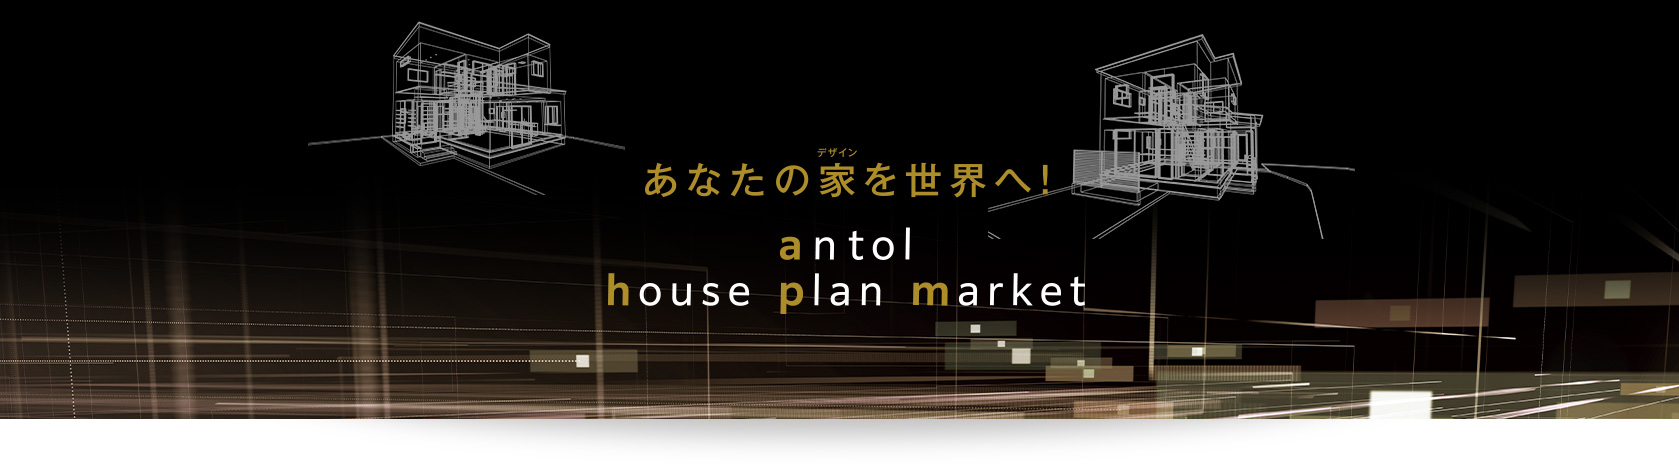 あなたの家（デザイン）を世界へ！antol house plan market